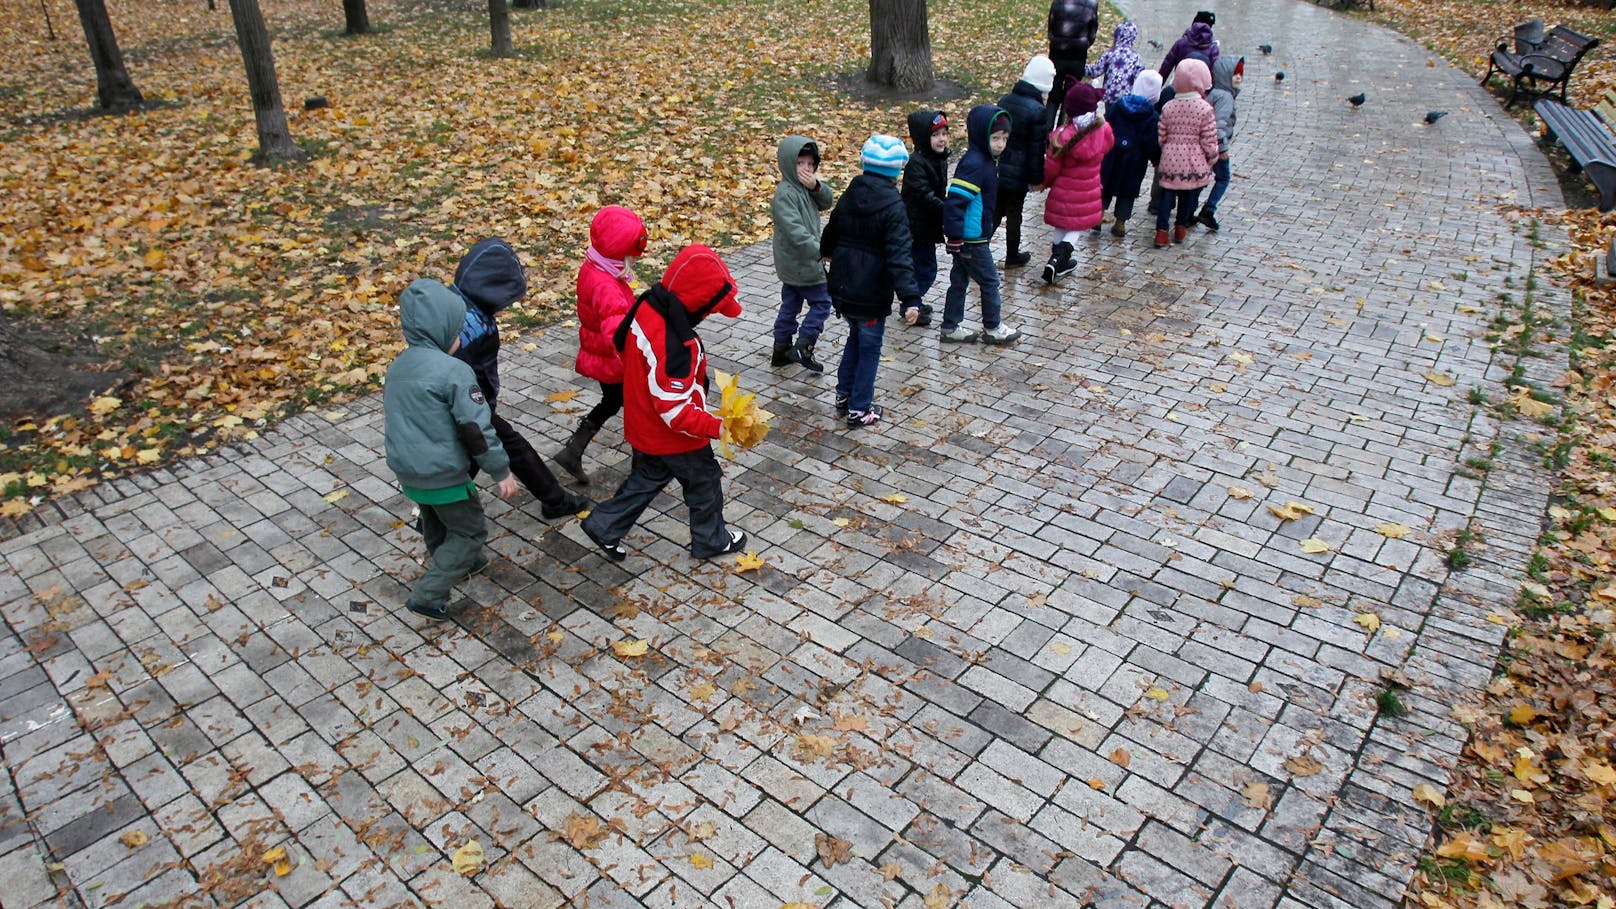 Kiew vermutet 19.500 verschleppte Kinder in Russland